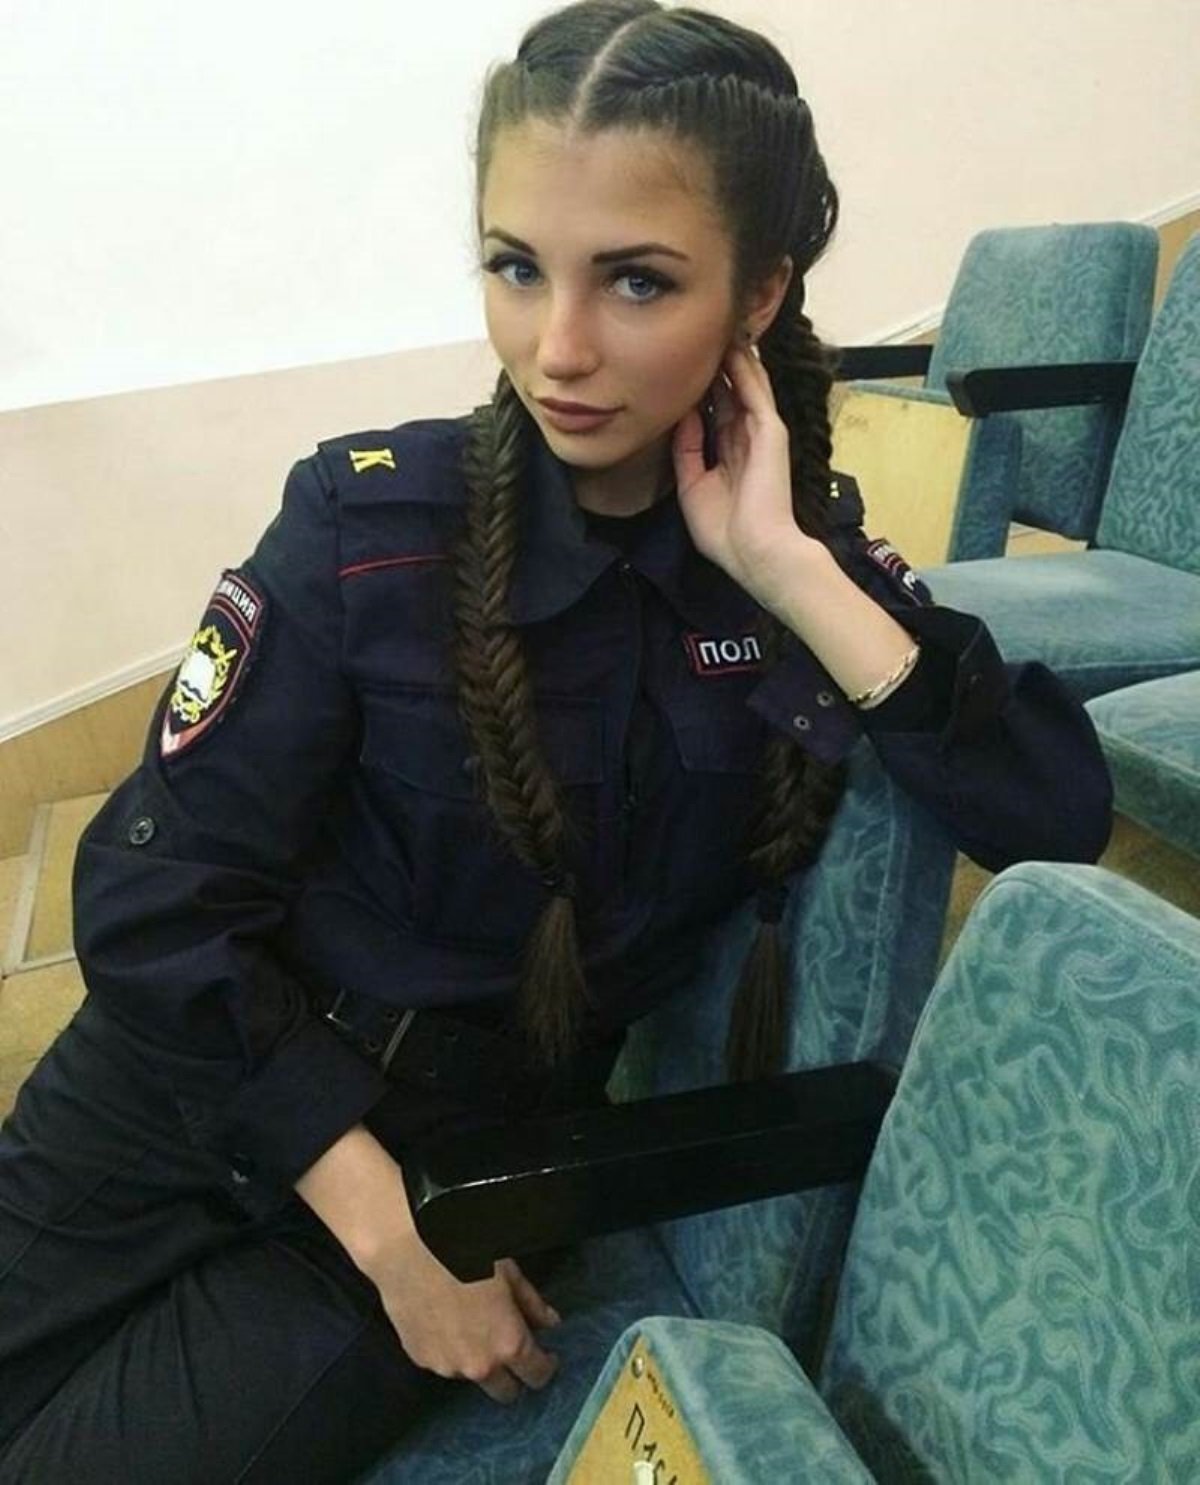 Прическа для девушки полицейского